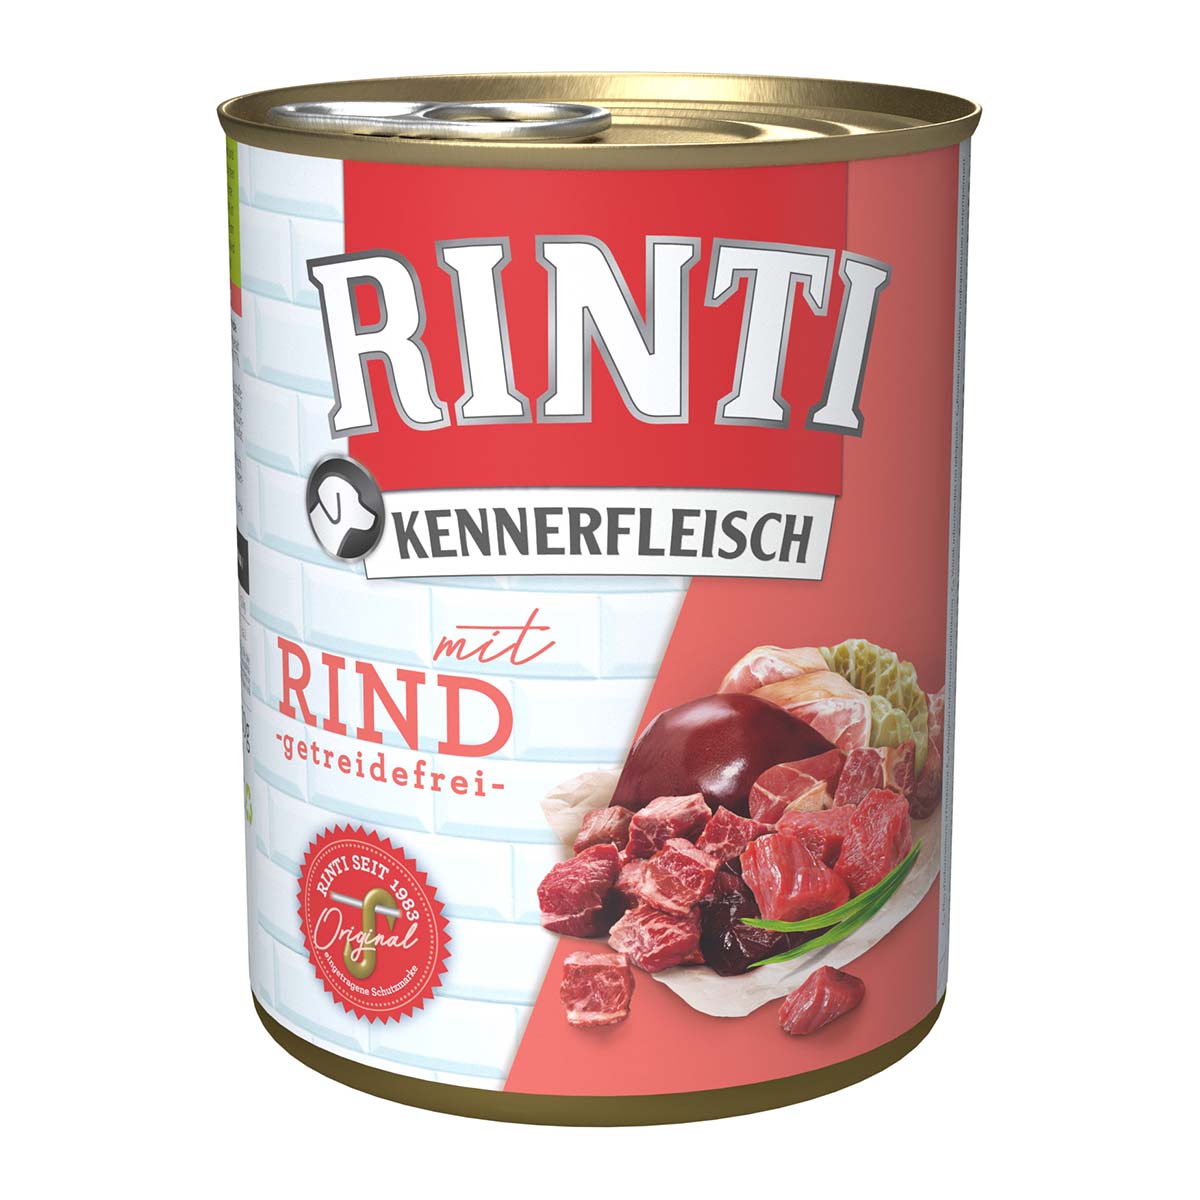 Rinti Kennerfleisch mit Rind 24x800g